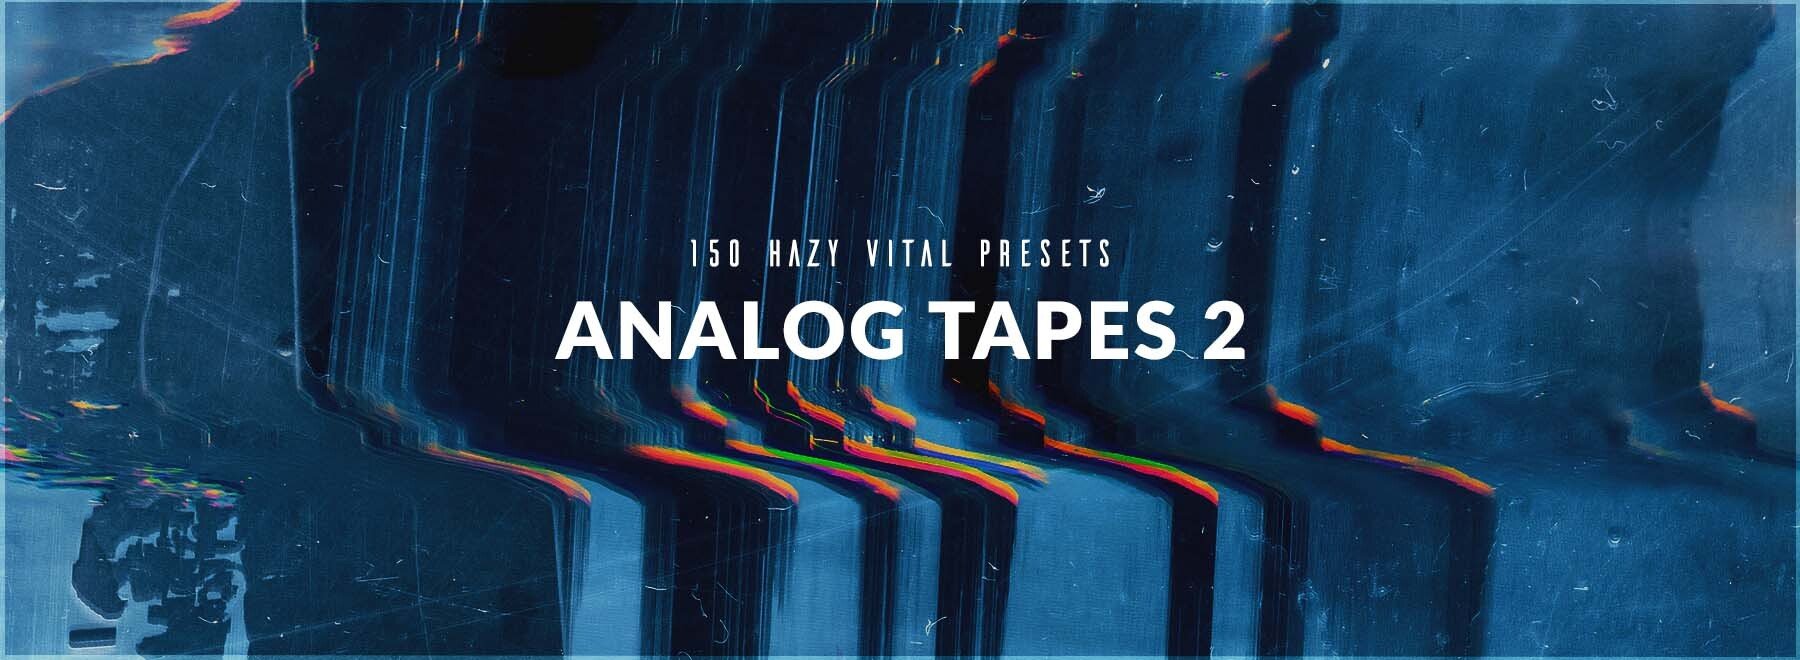 LP24 Audio - Analog Tapes 2